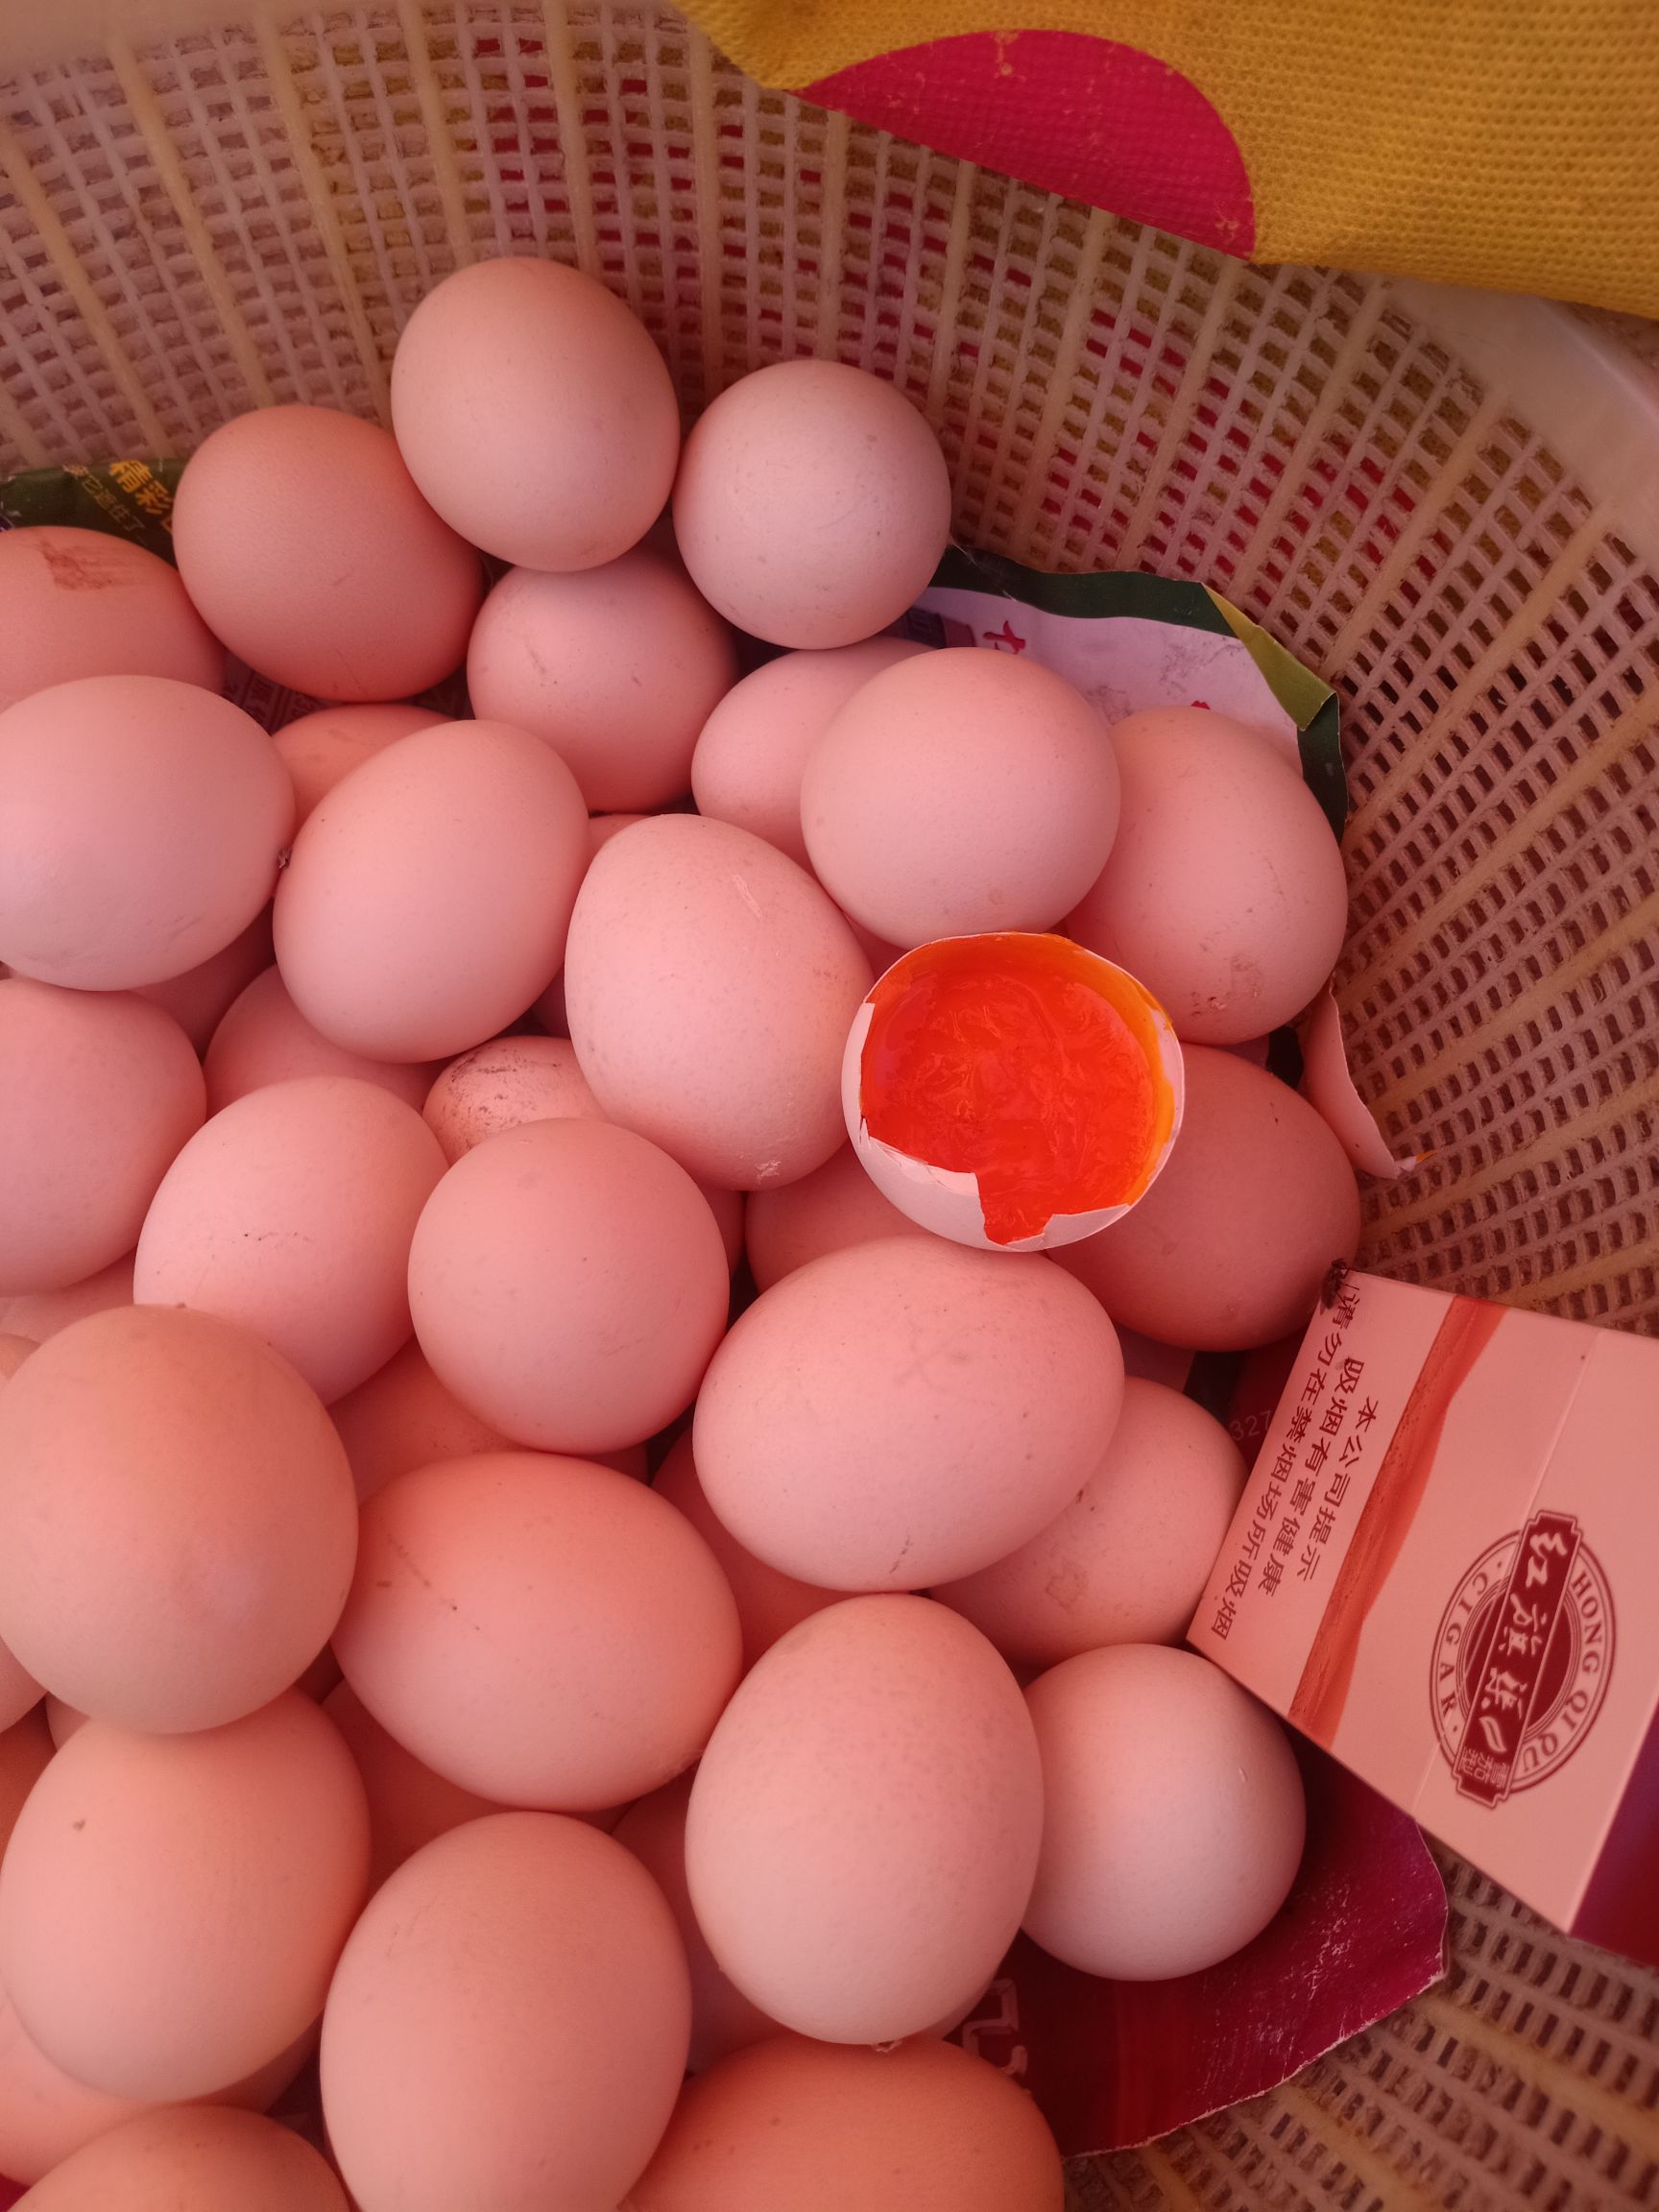 普通鸡蛋 鸡蛋,散养鸡蛋,红皮鸡蛋